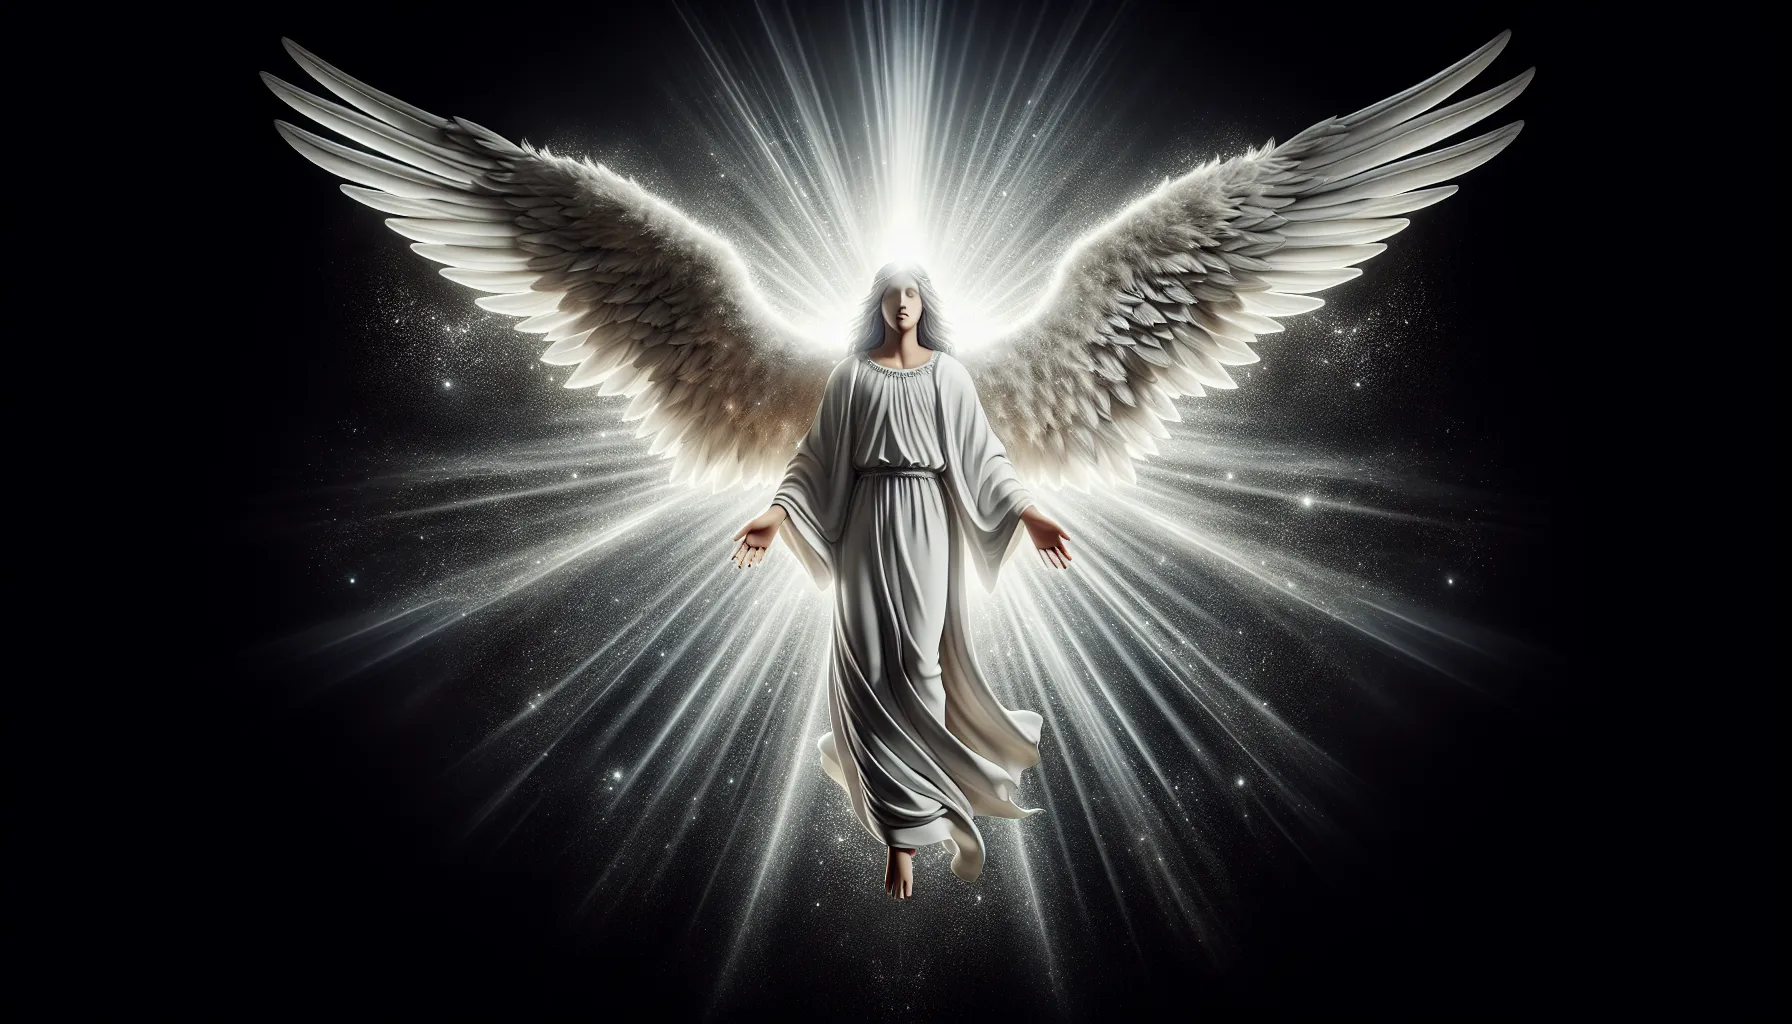 Representación artística de un ángel celestial en el cristianismo